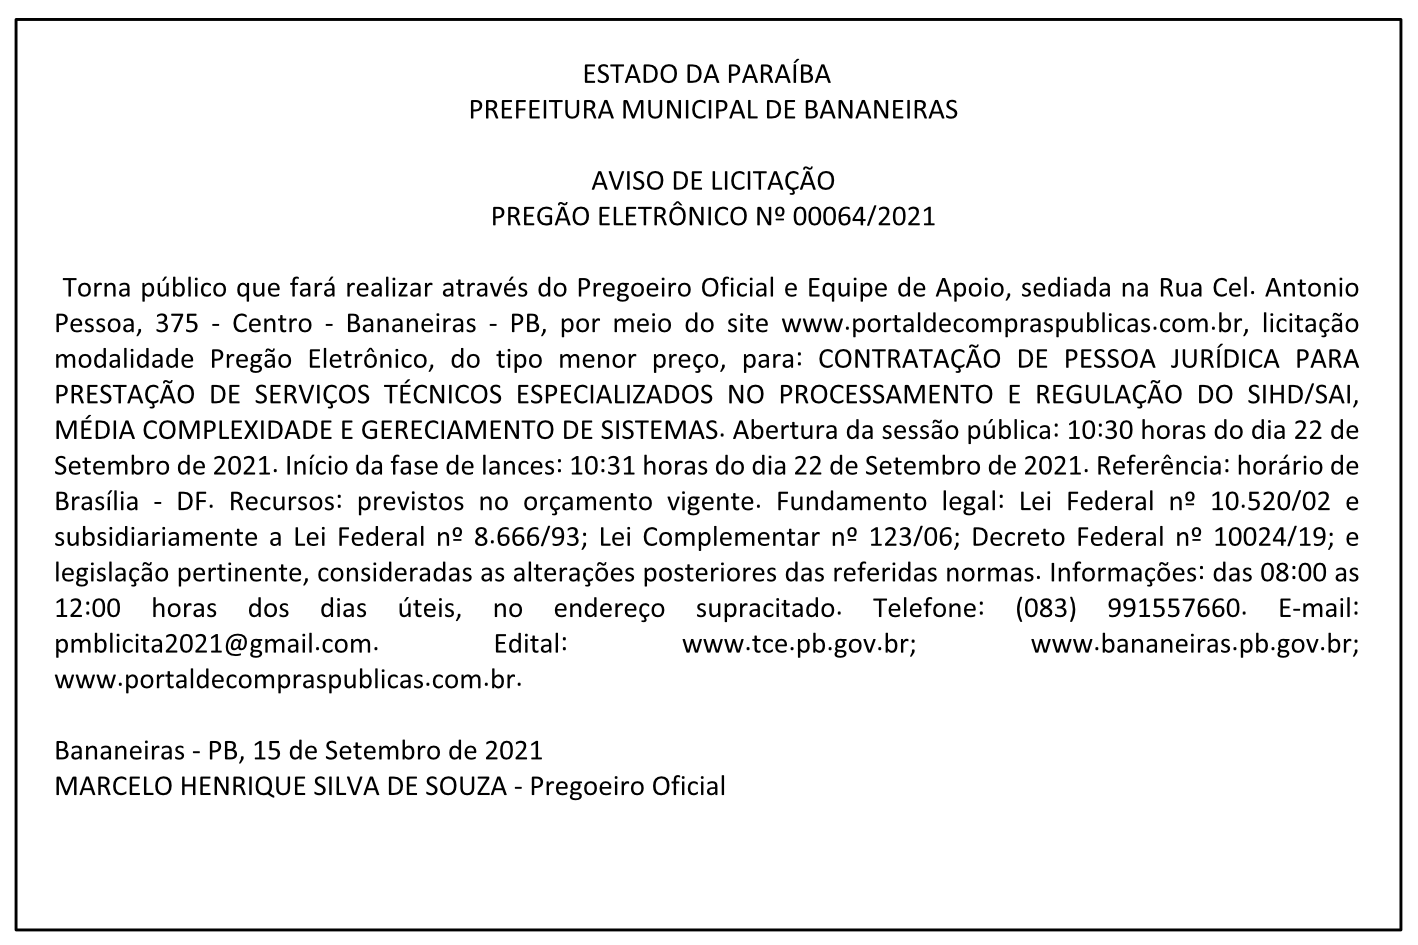 PREFEITURA MUNICIPAL DE BANANEIRAS – AVISO DE LICITAÇÃO – PREGÃO ELETRÔNICO Nº 00064/2021